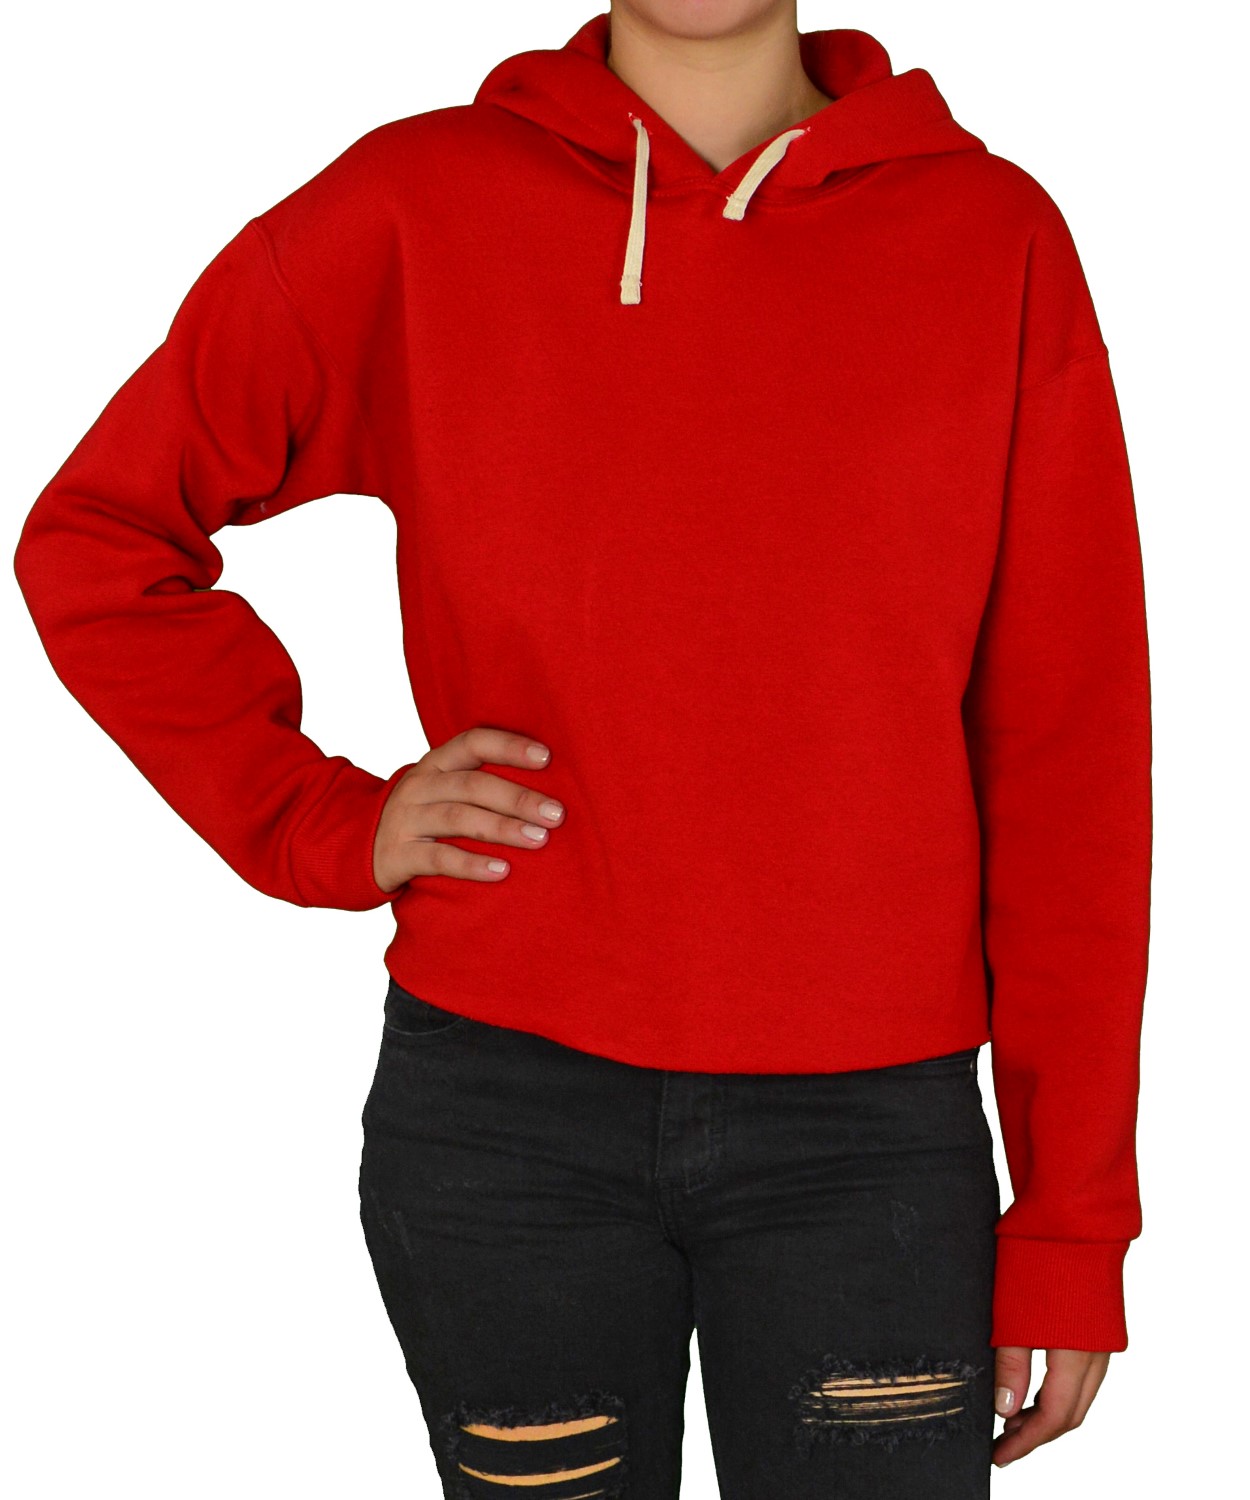 Γυναικείο κοντό φούτερ κόκκινο με κουκούλα 875087R